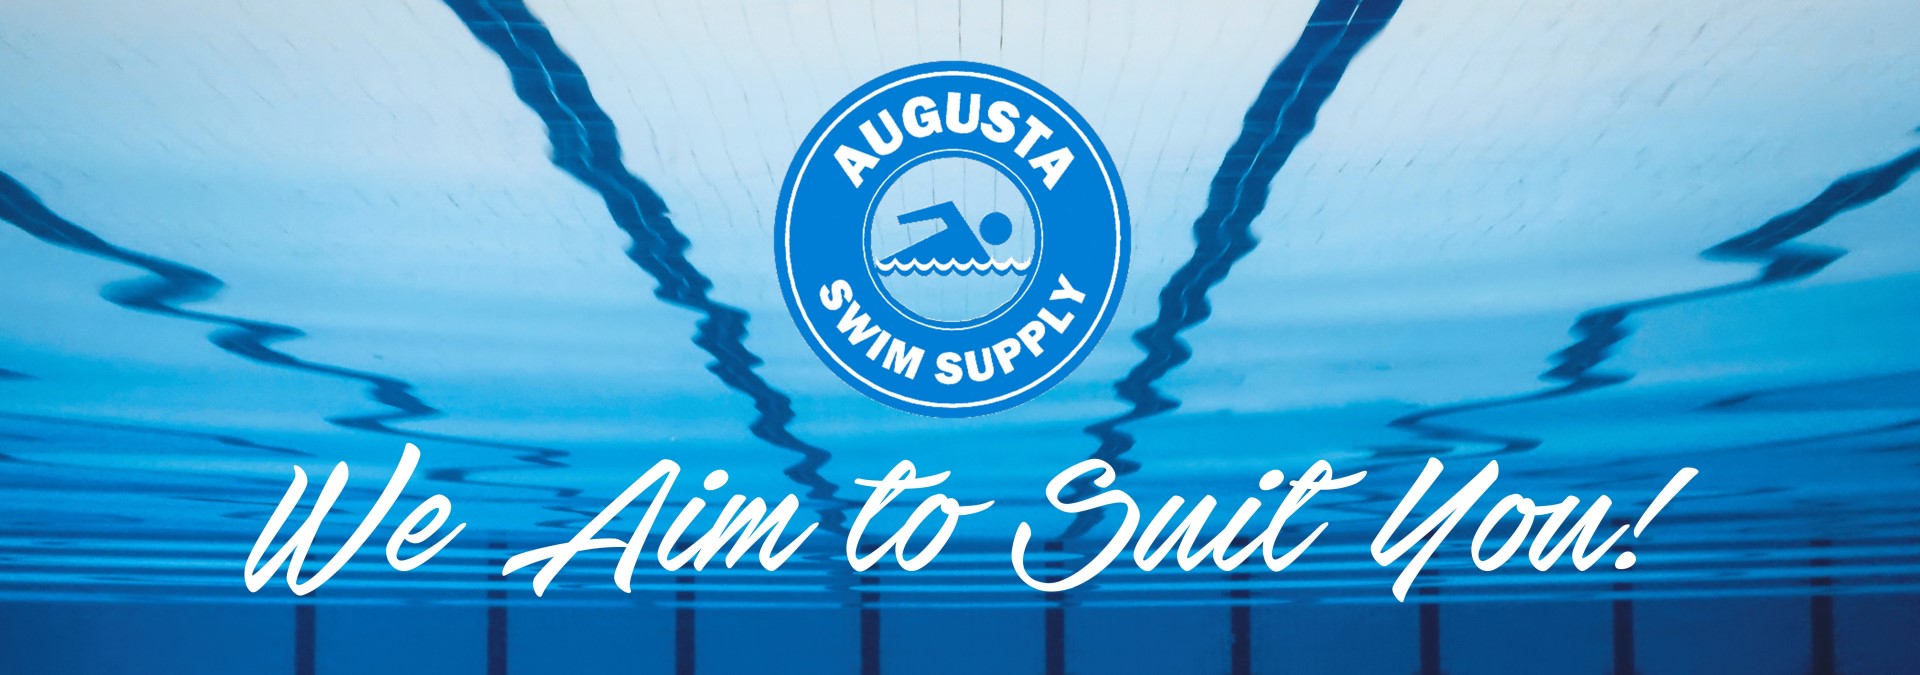 Augusta Swim Supply Swim Team Services Swim Team Supplies Augusta Ga 